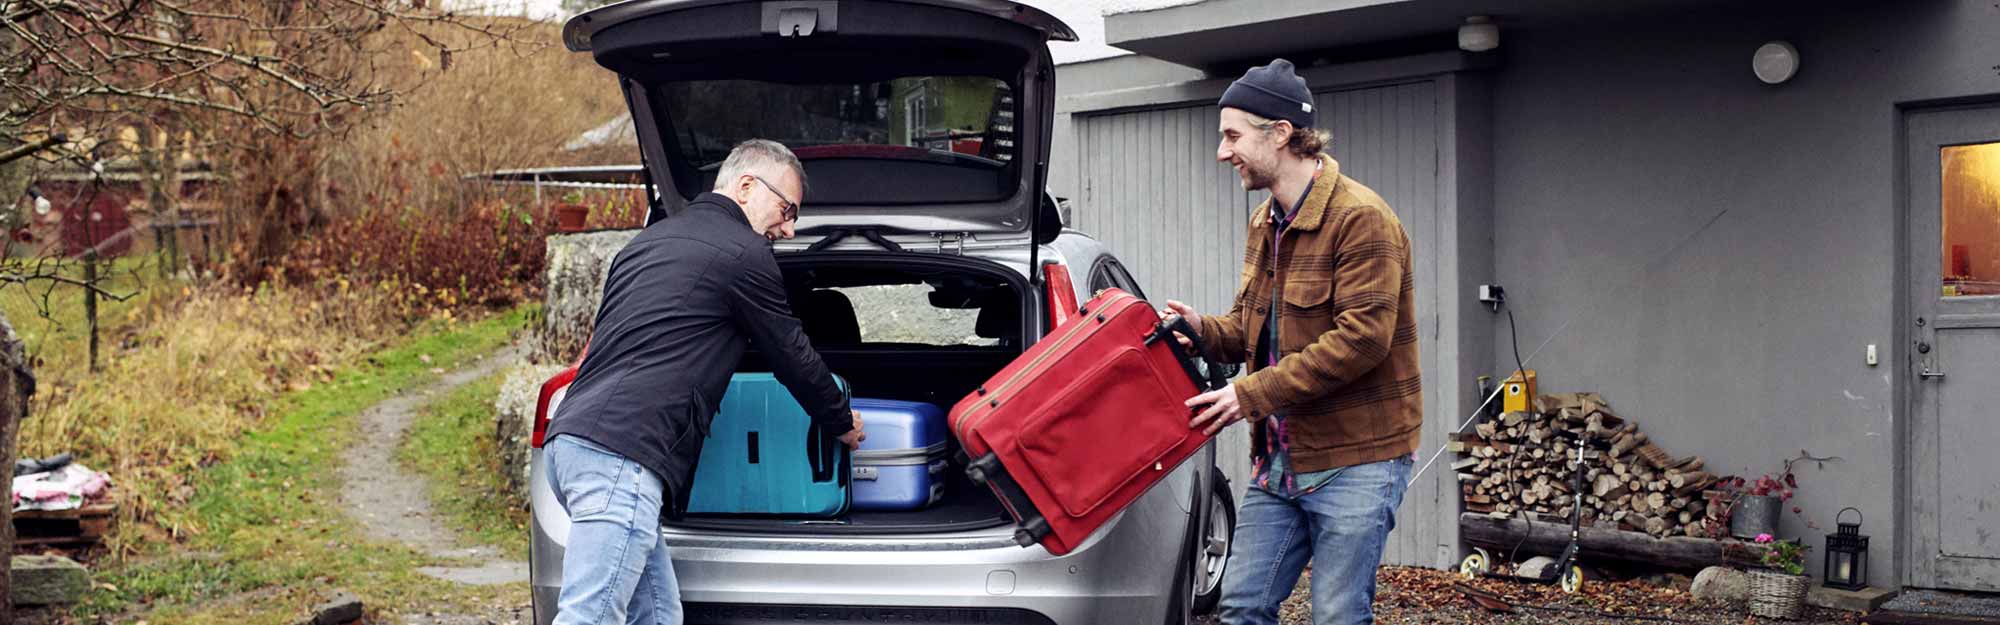 Två män packar in resväskor i bagageluckan på en bil